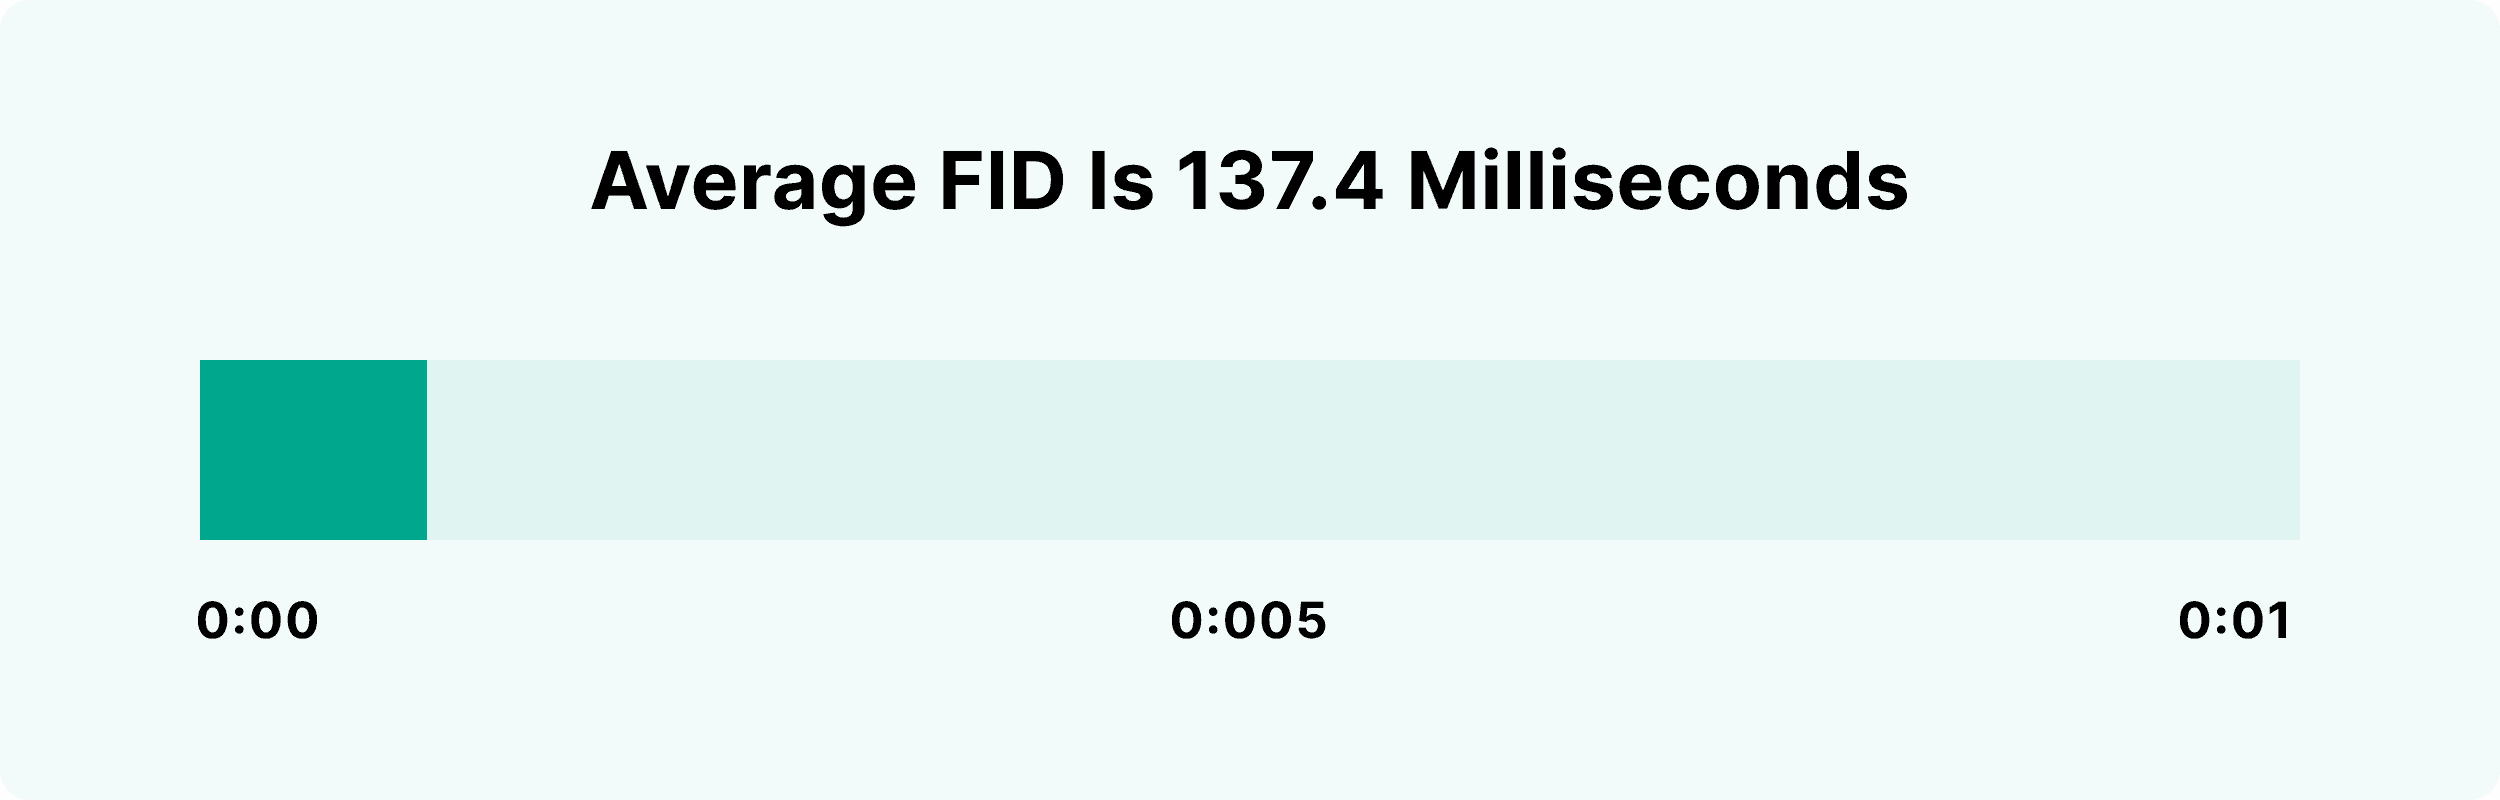 Average FID is 137.4 milliseconds